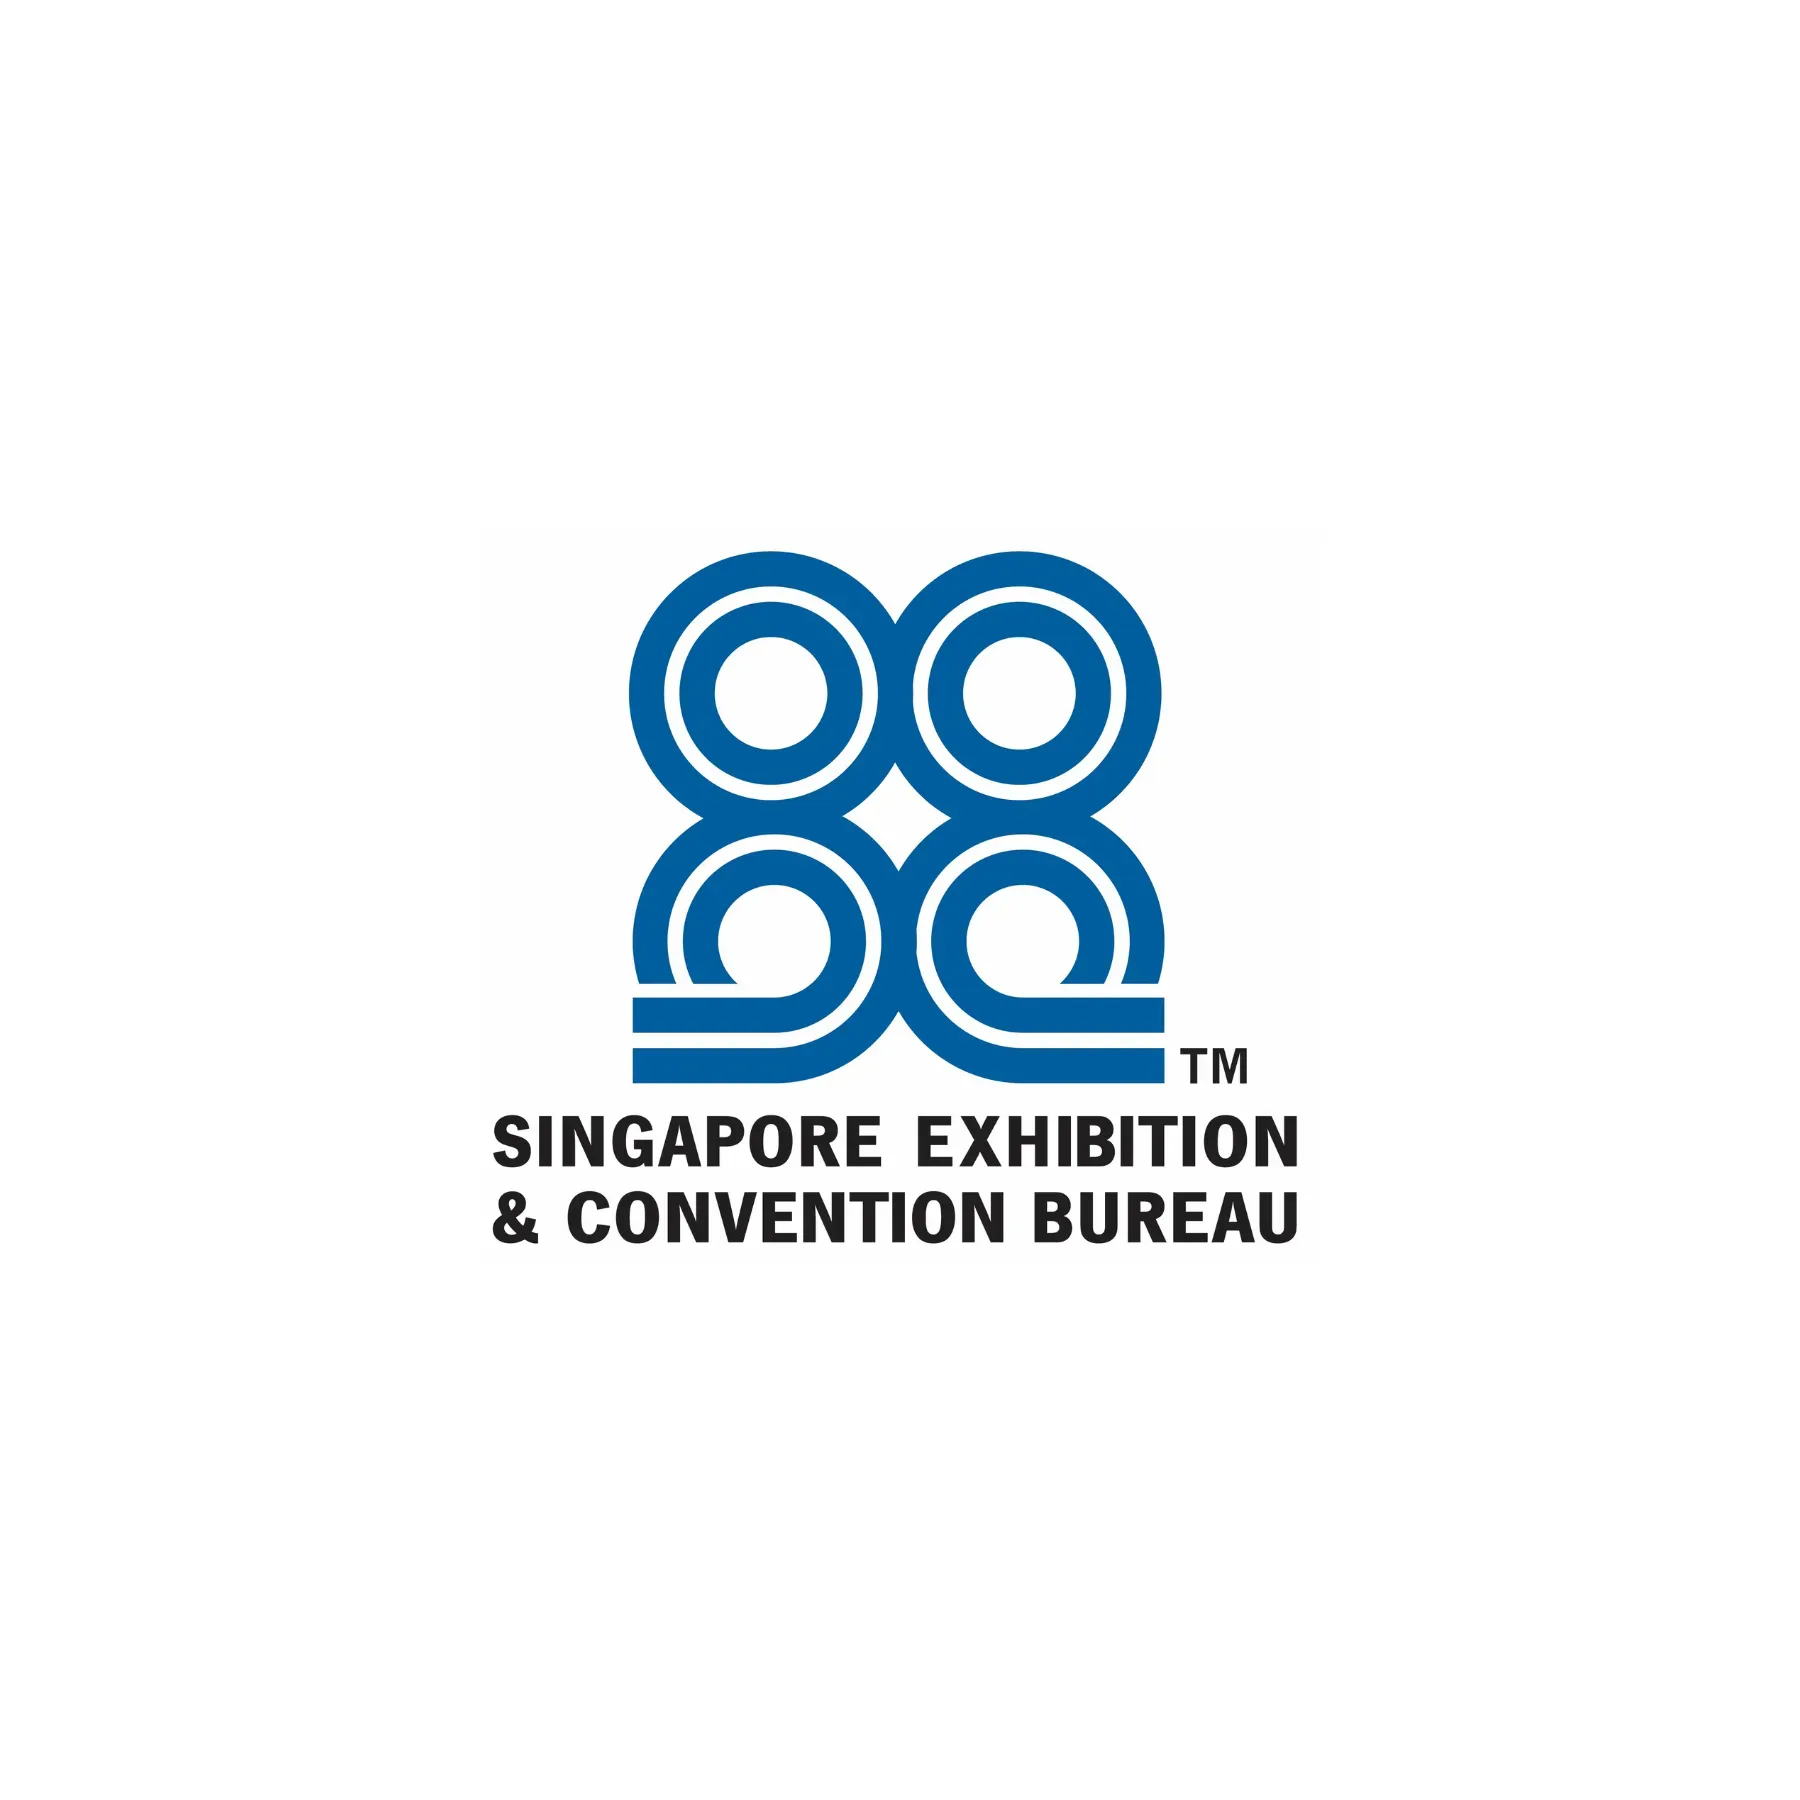 Singapore exhibition & convention bureau